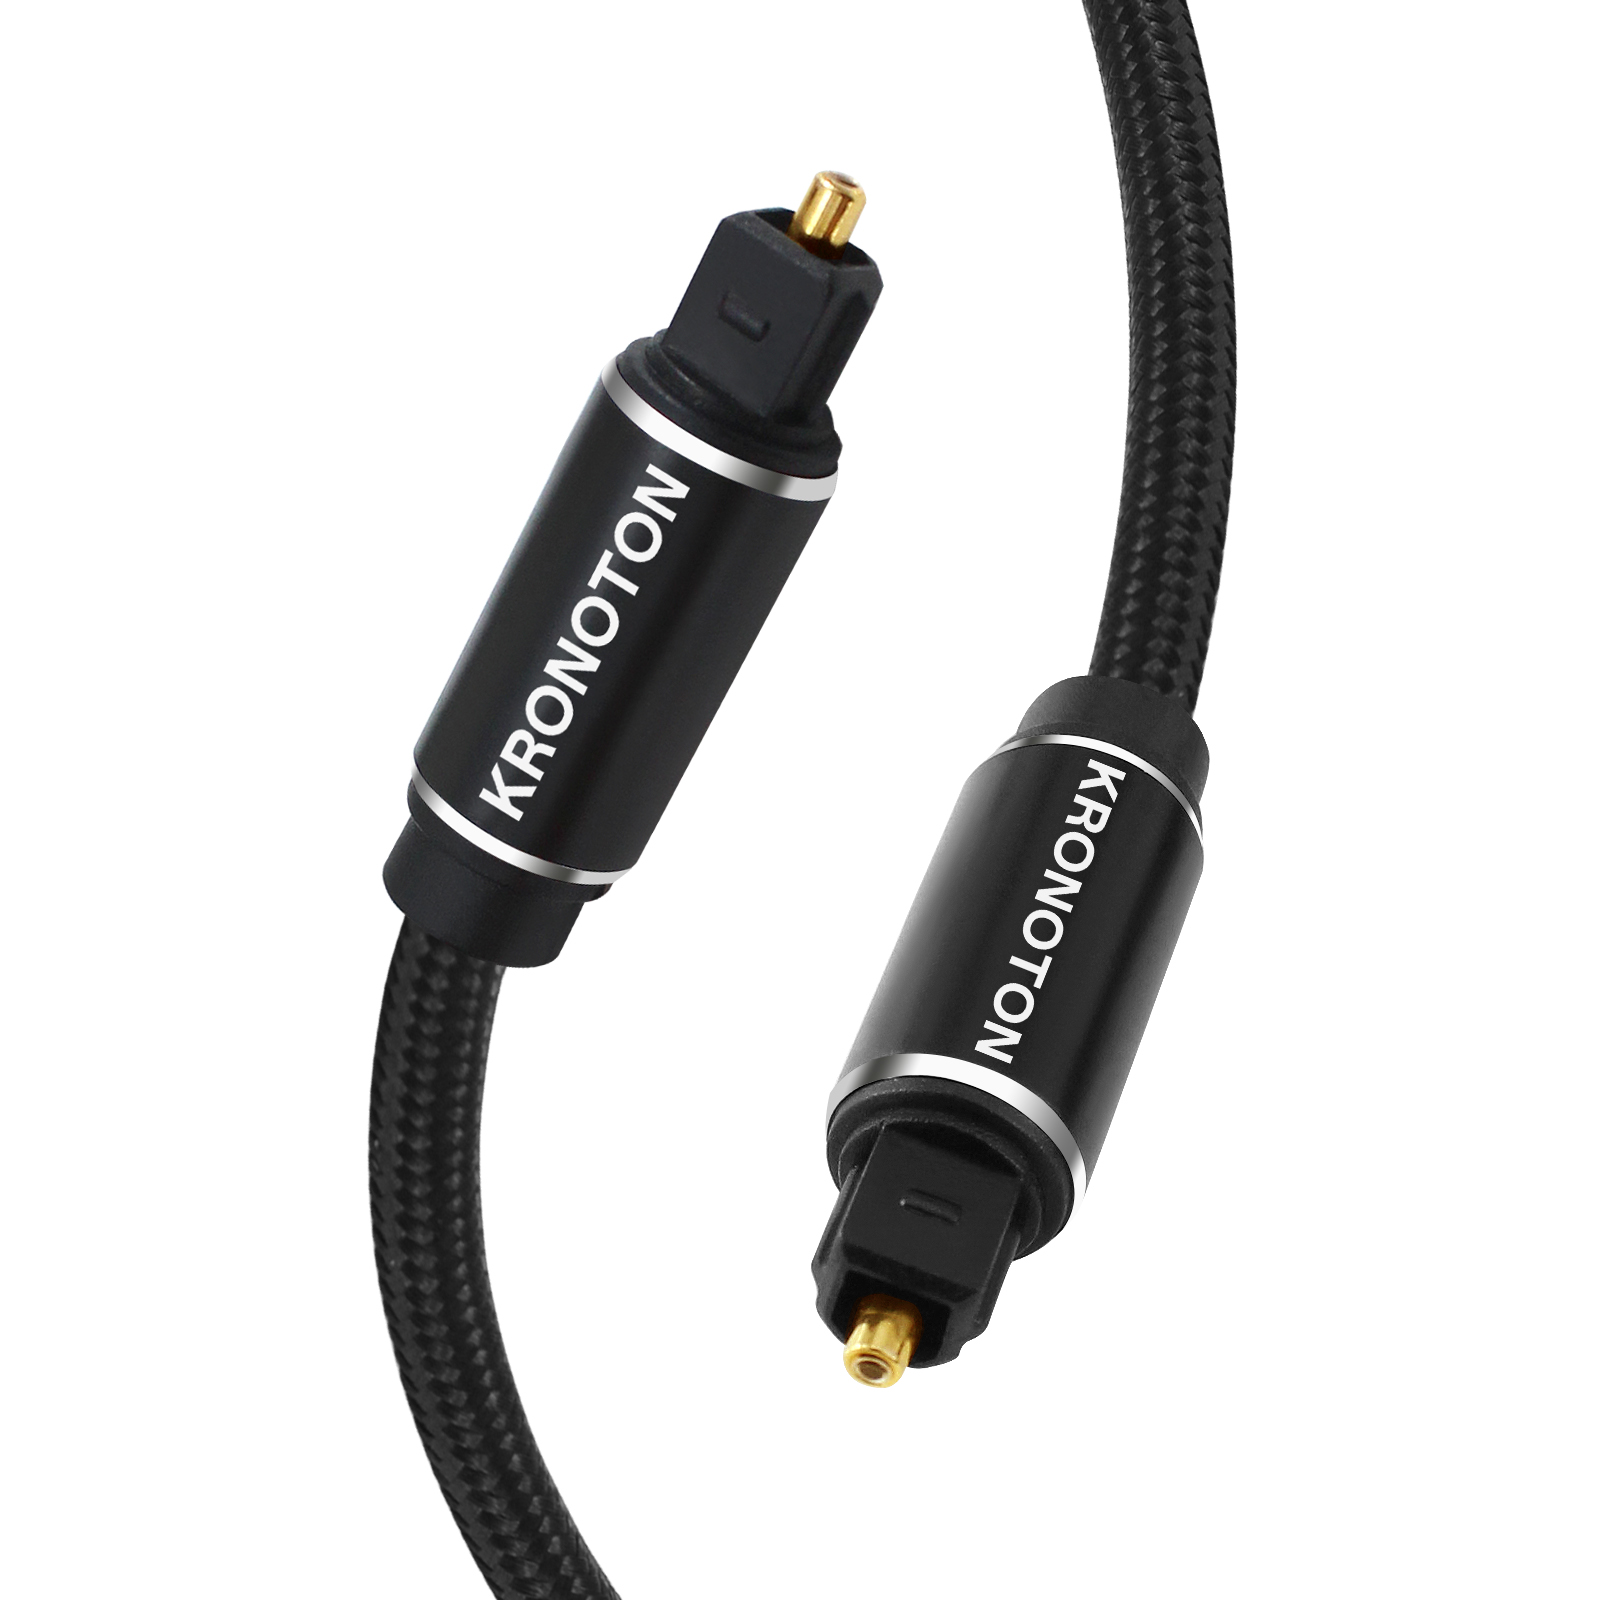 HDSX 1,5 Toslink KRONOTON Audio m Premium Lichtleiter Optical, Digital Kabel Kabel,